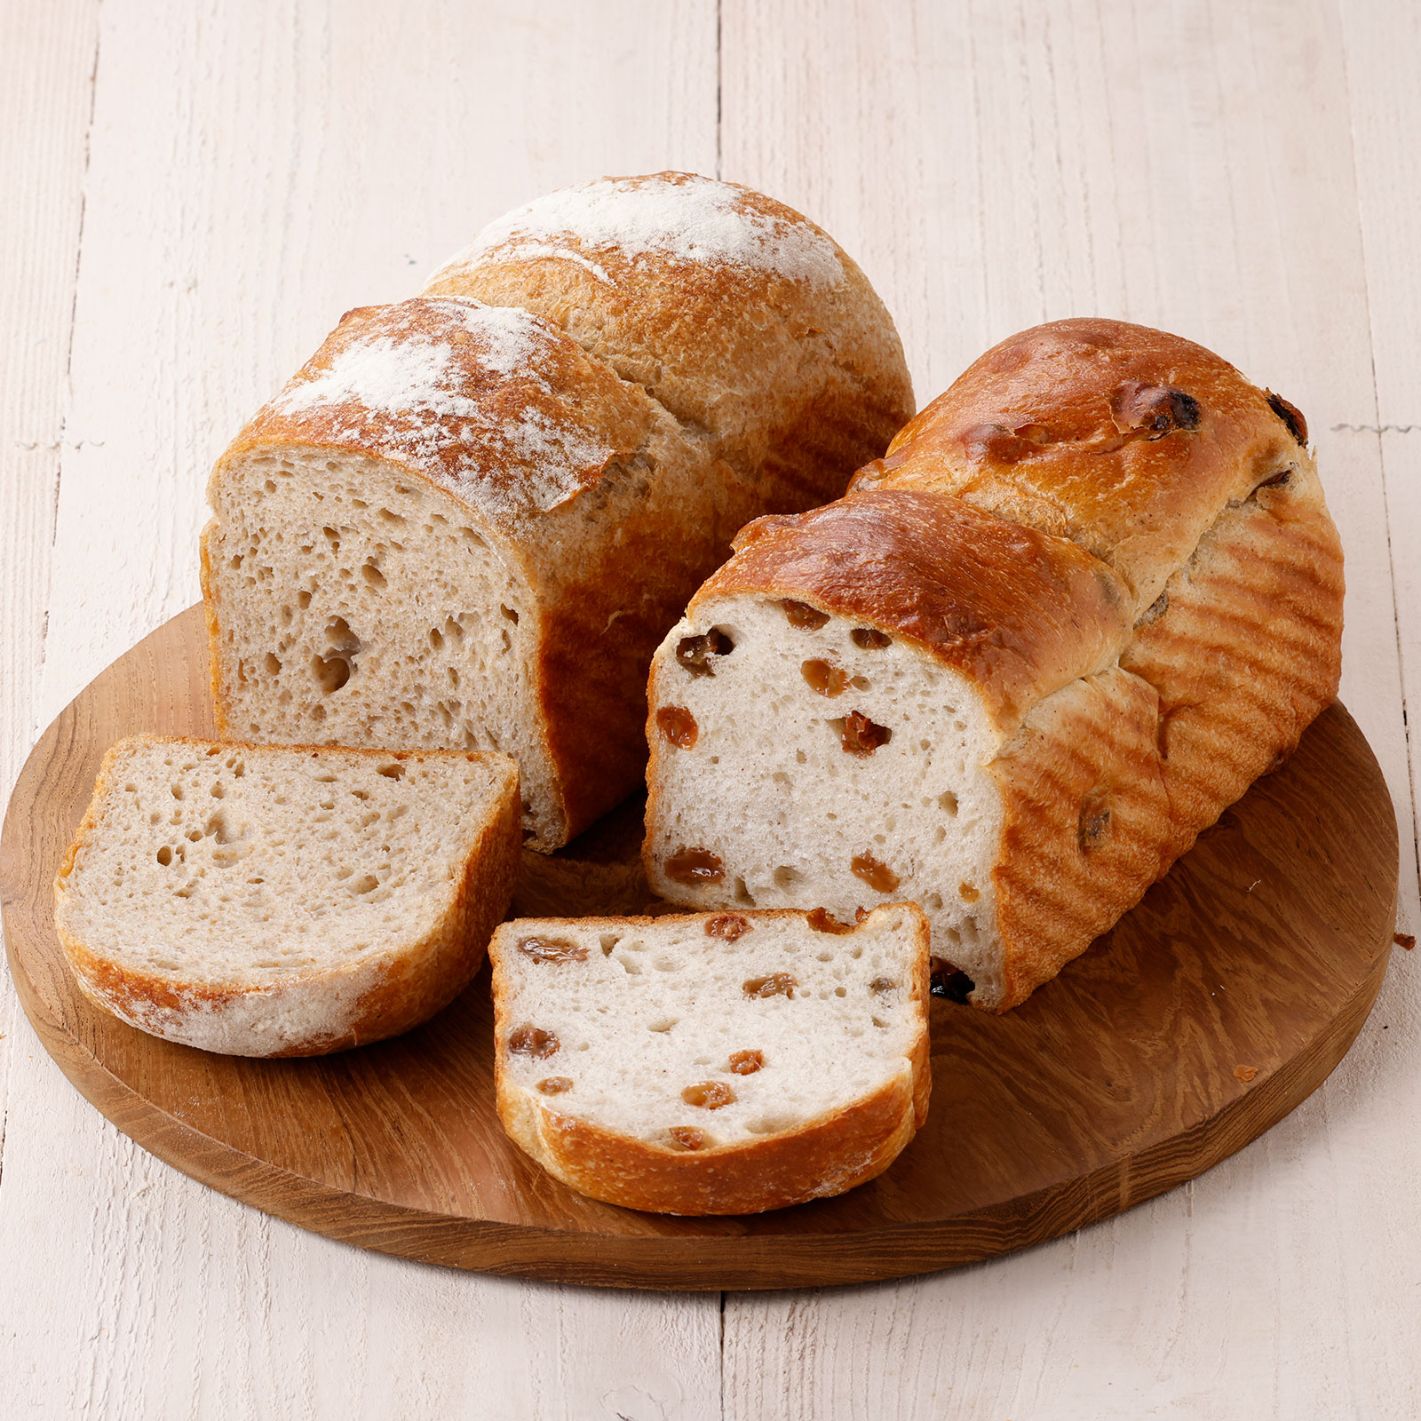 有機シナモンが香るぶどう食パンと 小麦本来の旨みが活きた全粒粉食パン